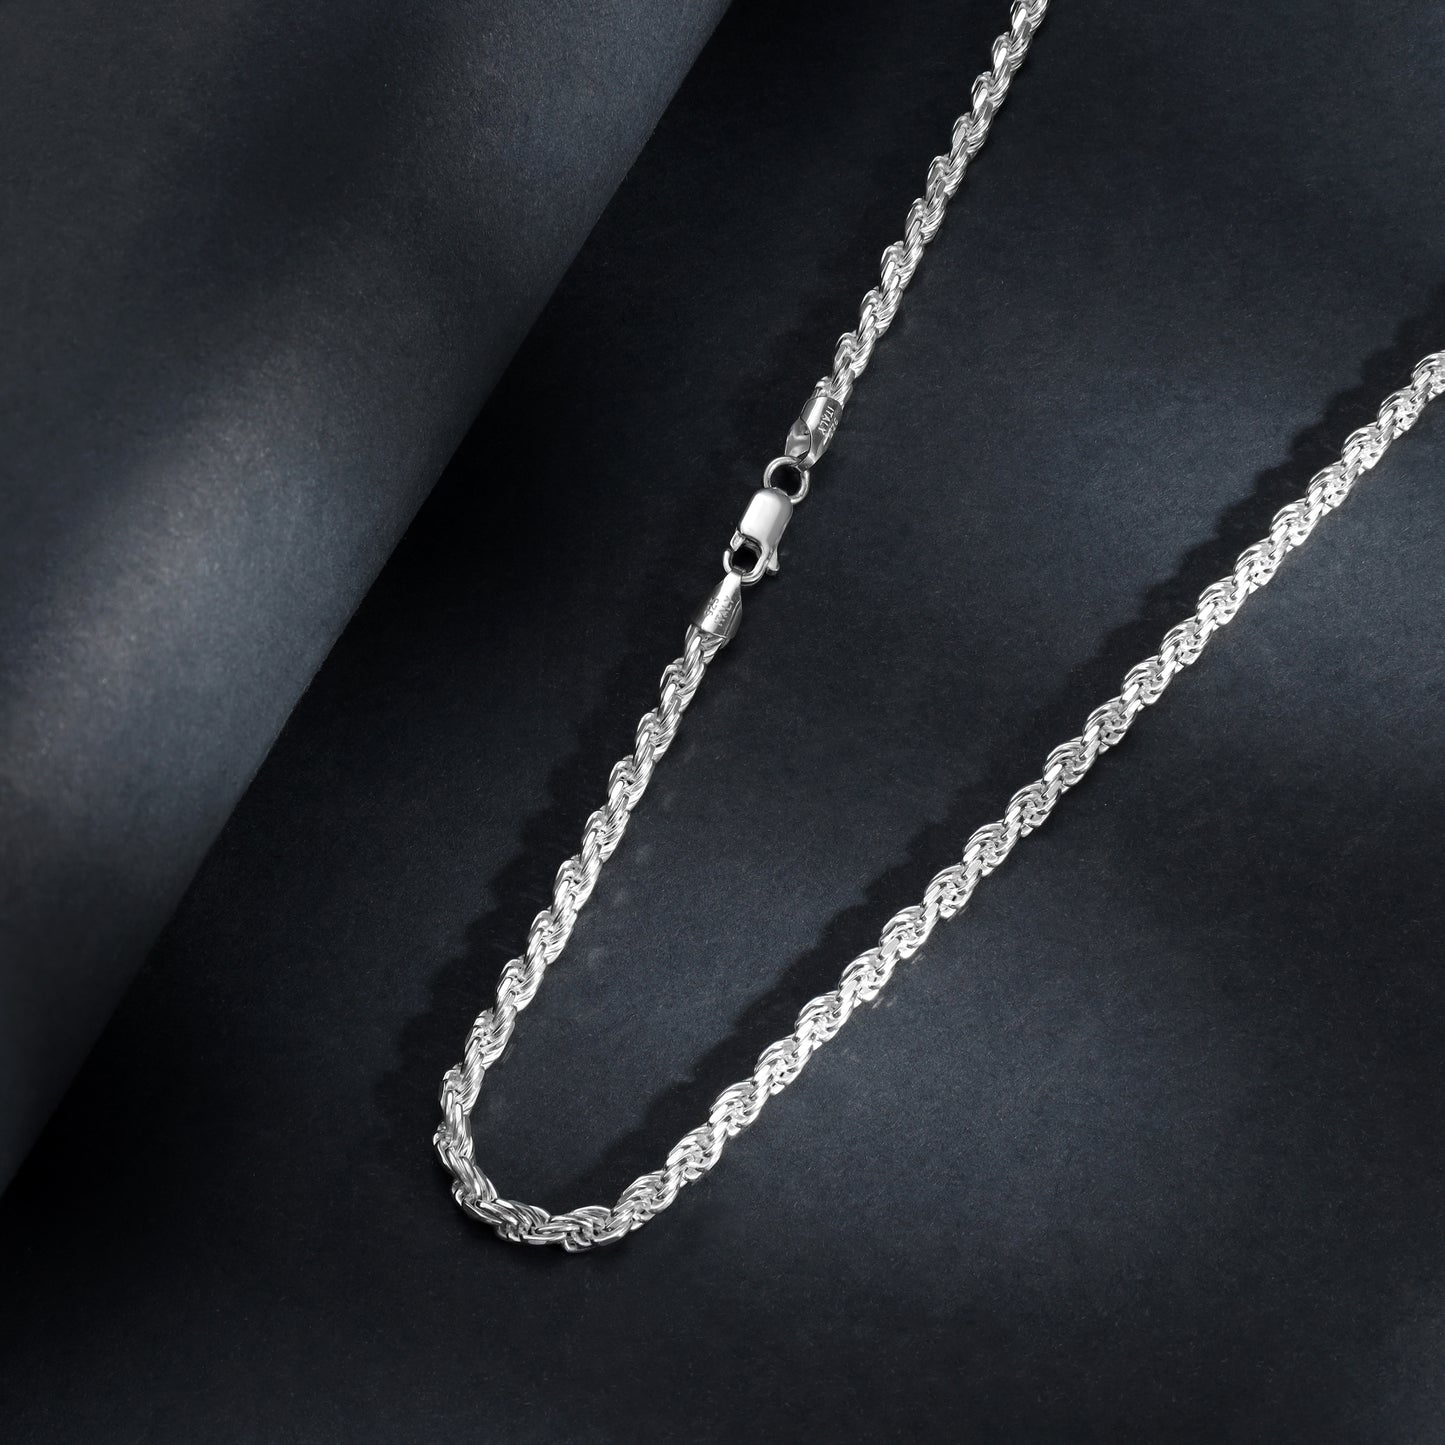 Kordelkette Rope Chain 3,5mm breit 45cm lang massiv 925 Sterling Silber (K1022)